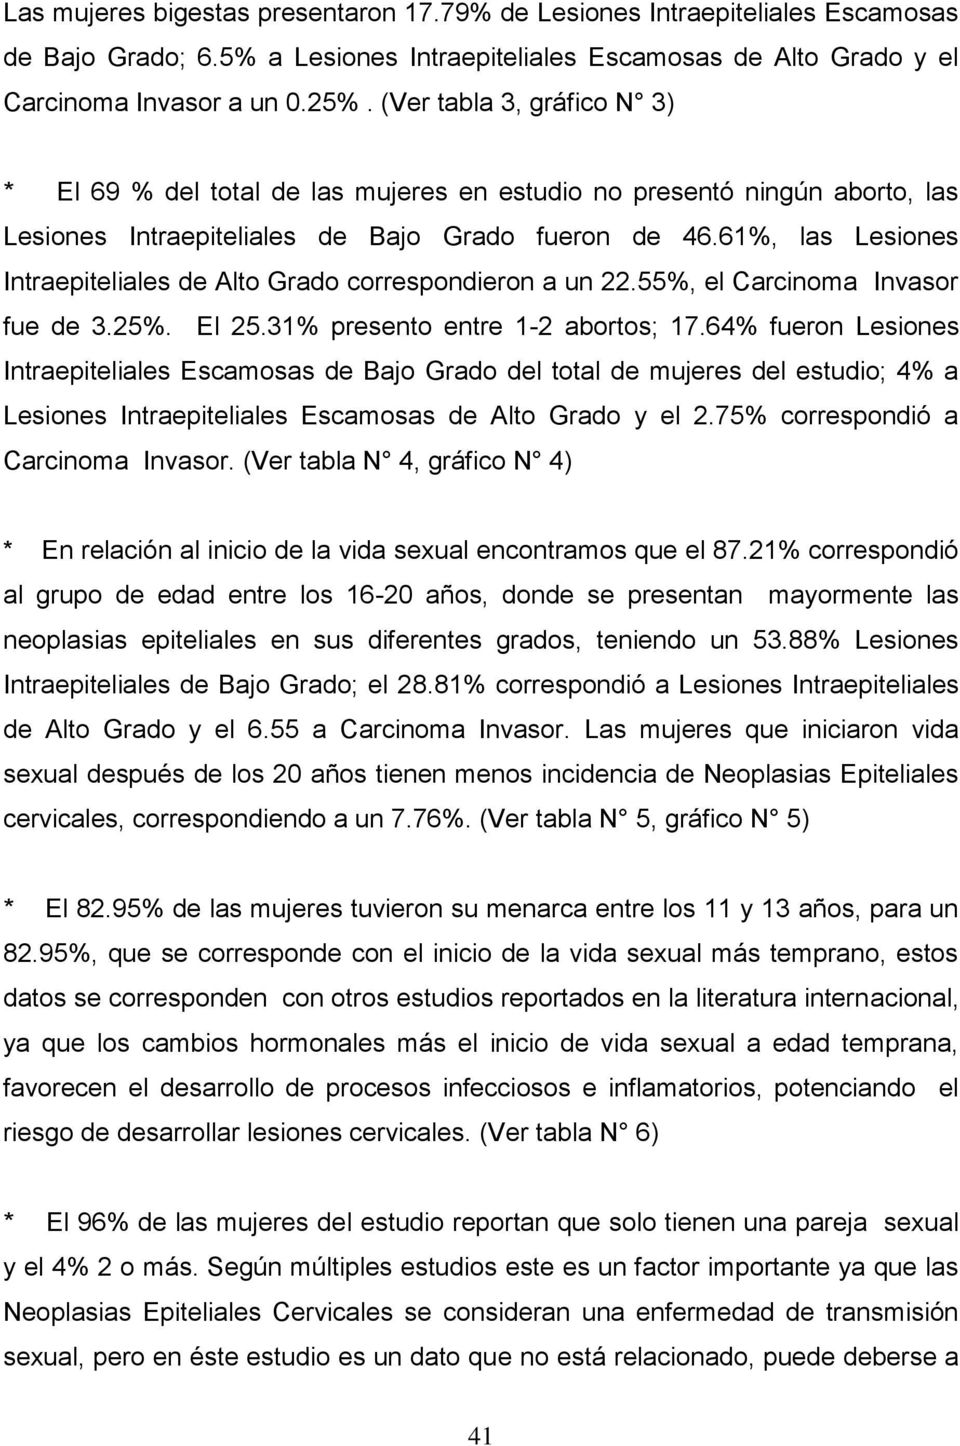 61%, las Lesiones Intraepiteliales de Alto Grado correspondieron a un 22.55%, el Carcinoma Invasor fue de 3.25%. El 25.31% presento entre 1-2 abortos; 17.